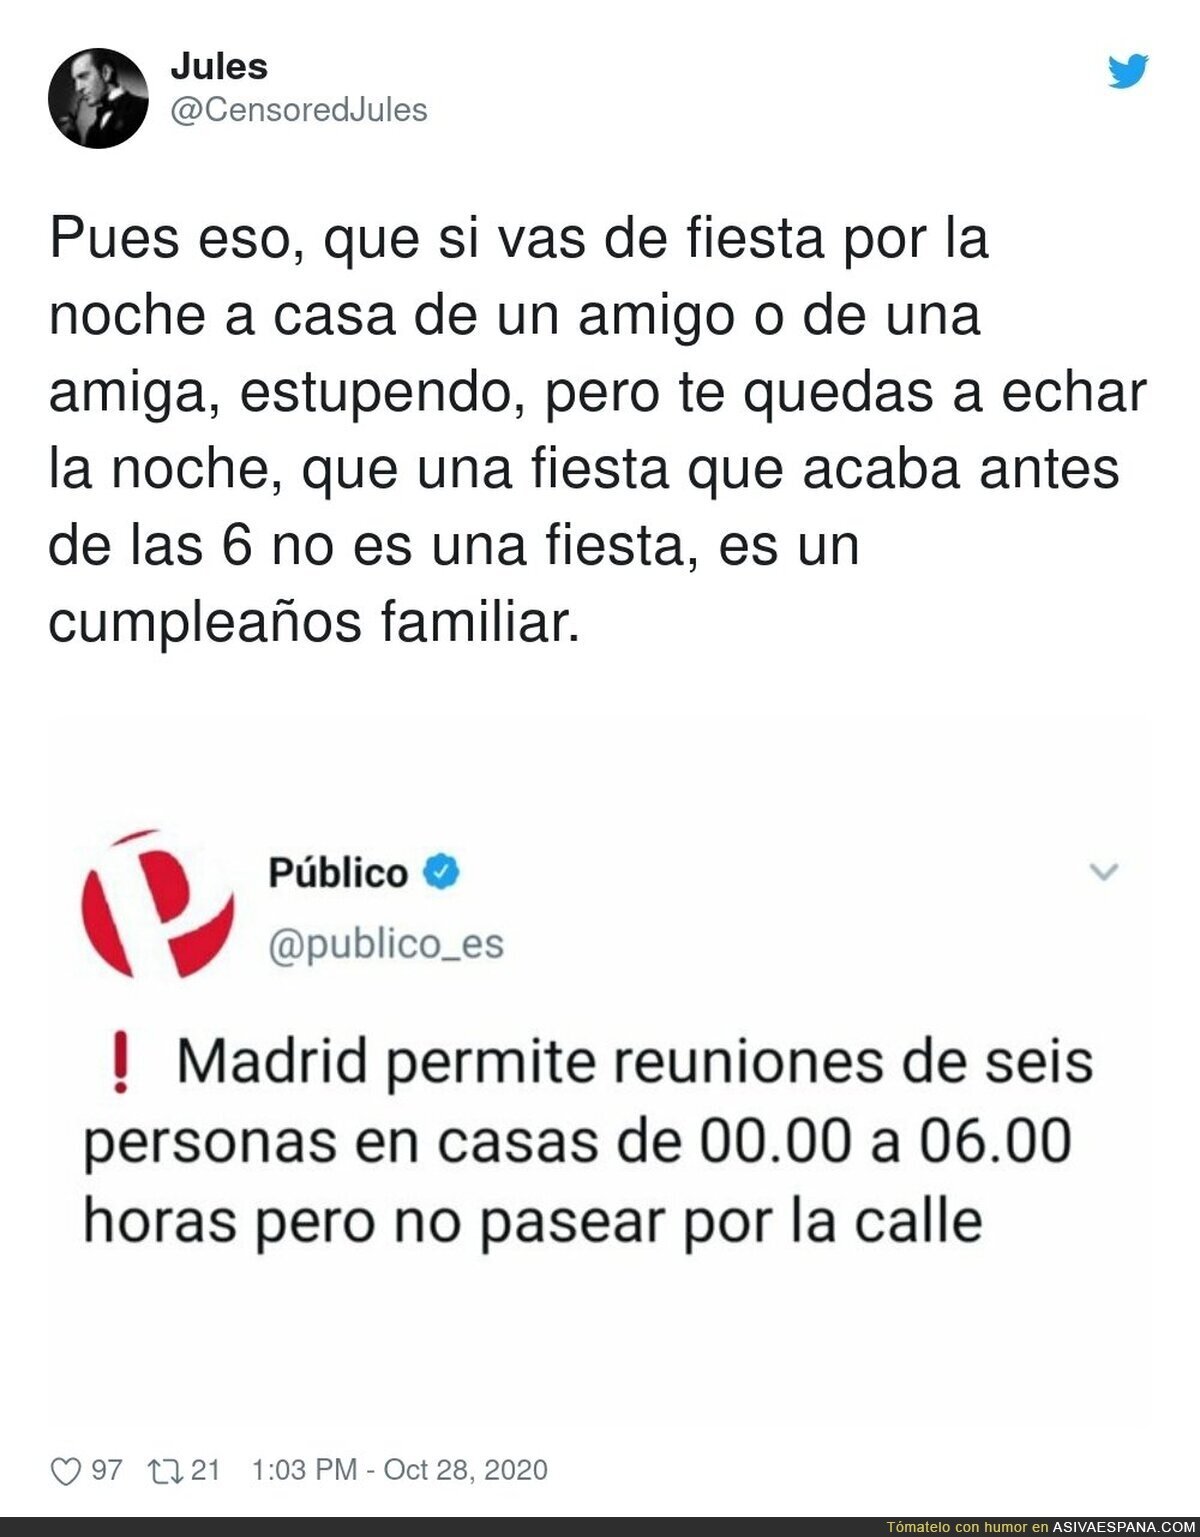 ¿La lógica de Madrid?